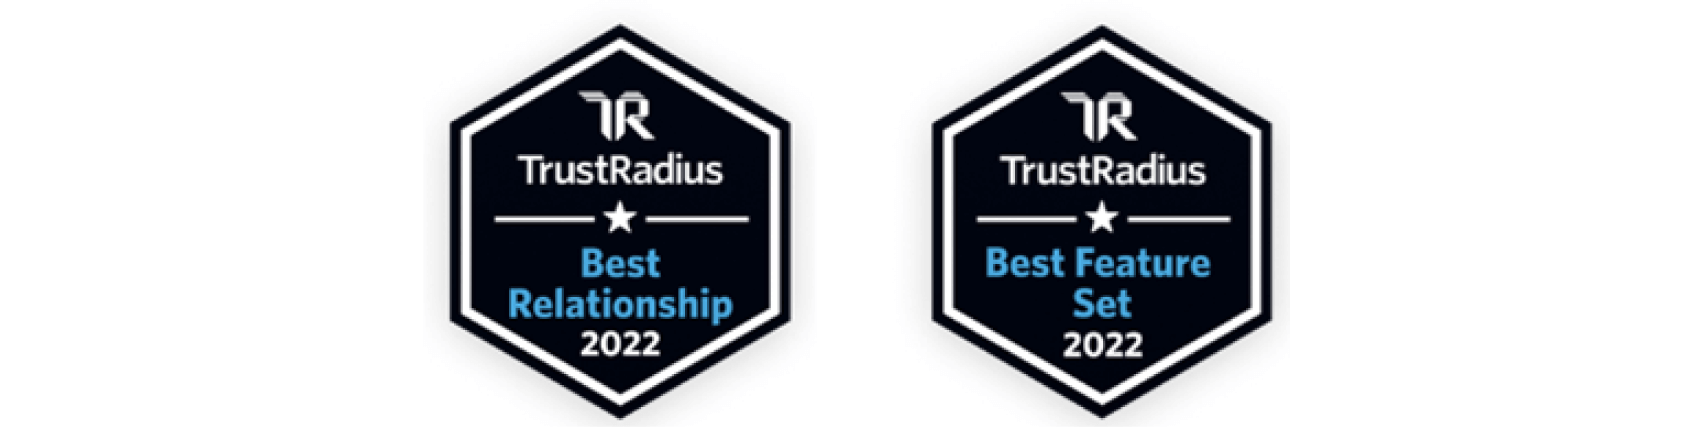 TrustRadius Best Relationship 2022; TrustRadius Best Feature Set 2022